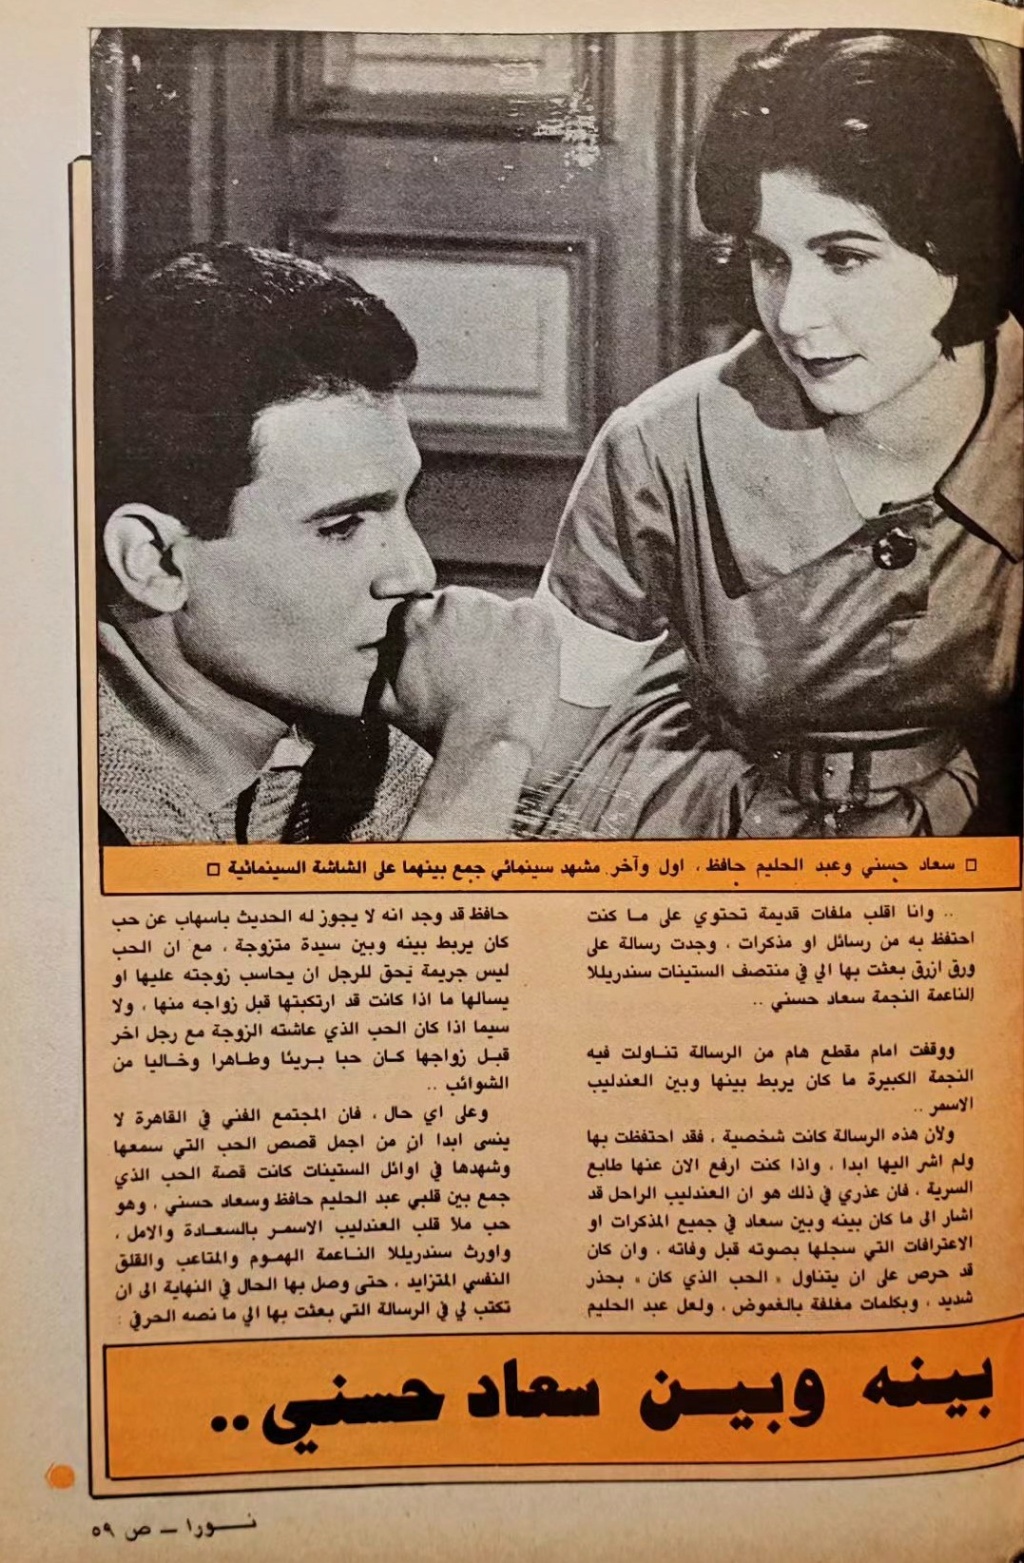 1977 - مقال صحفي : حكاية طويلة .. متى بدأت ؟ بين العندليب وسعاد حسني 1983 م 2105